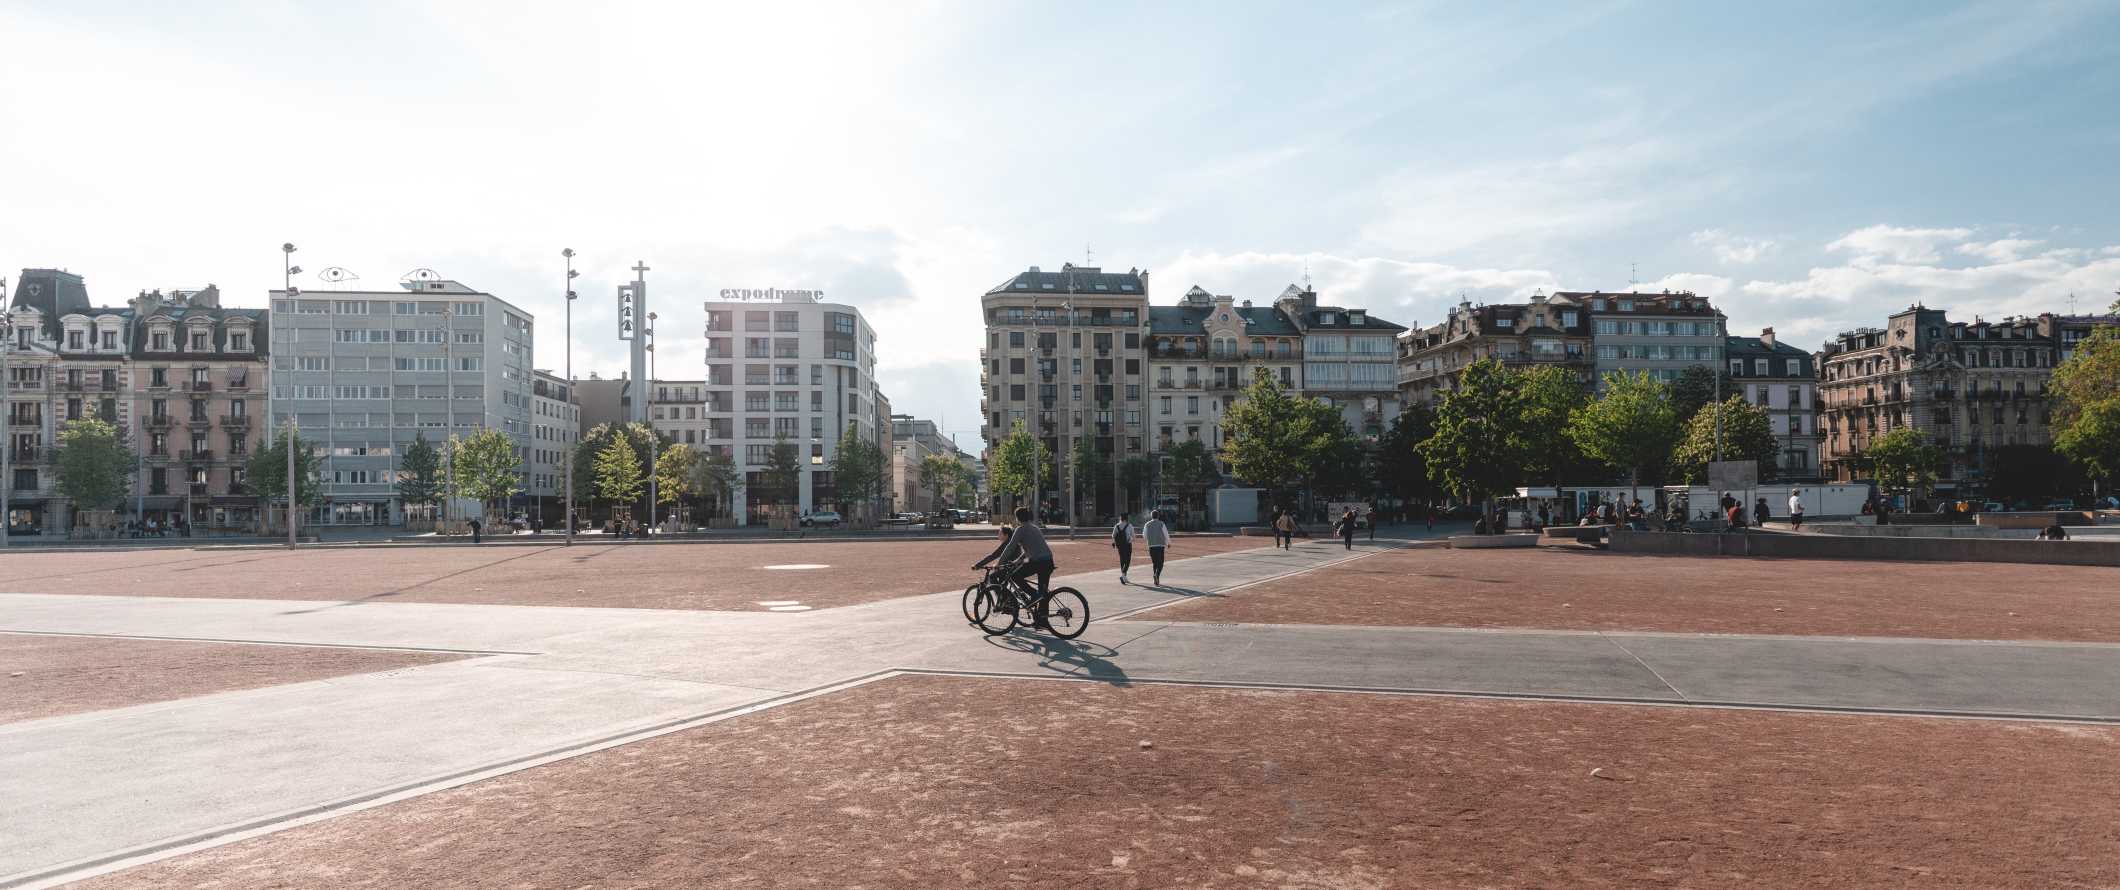 People walking and biking through a large plaza in Geneva, Switzerland